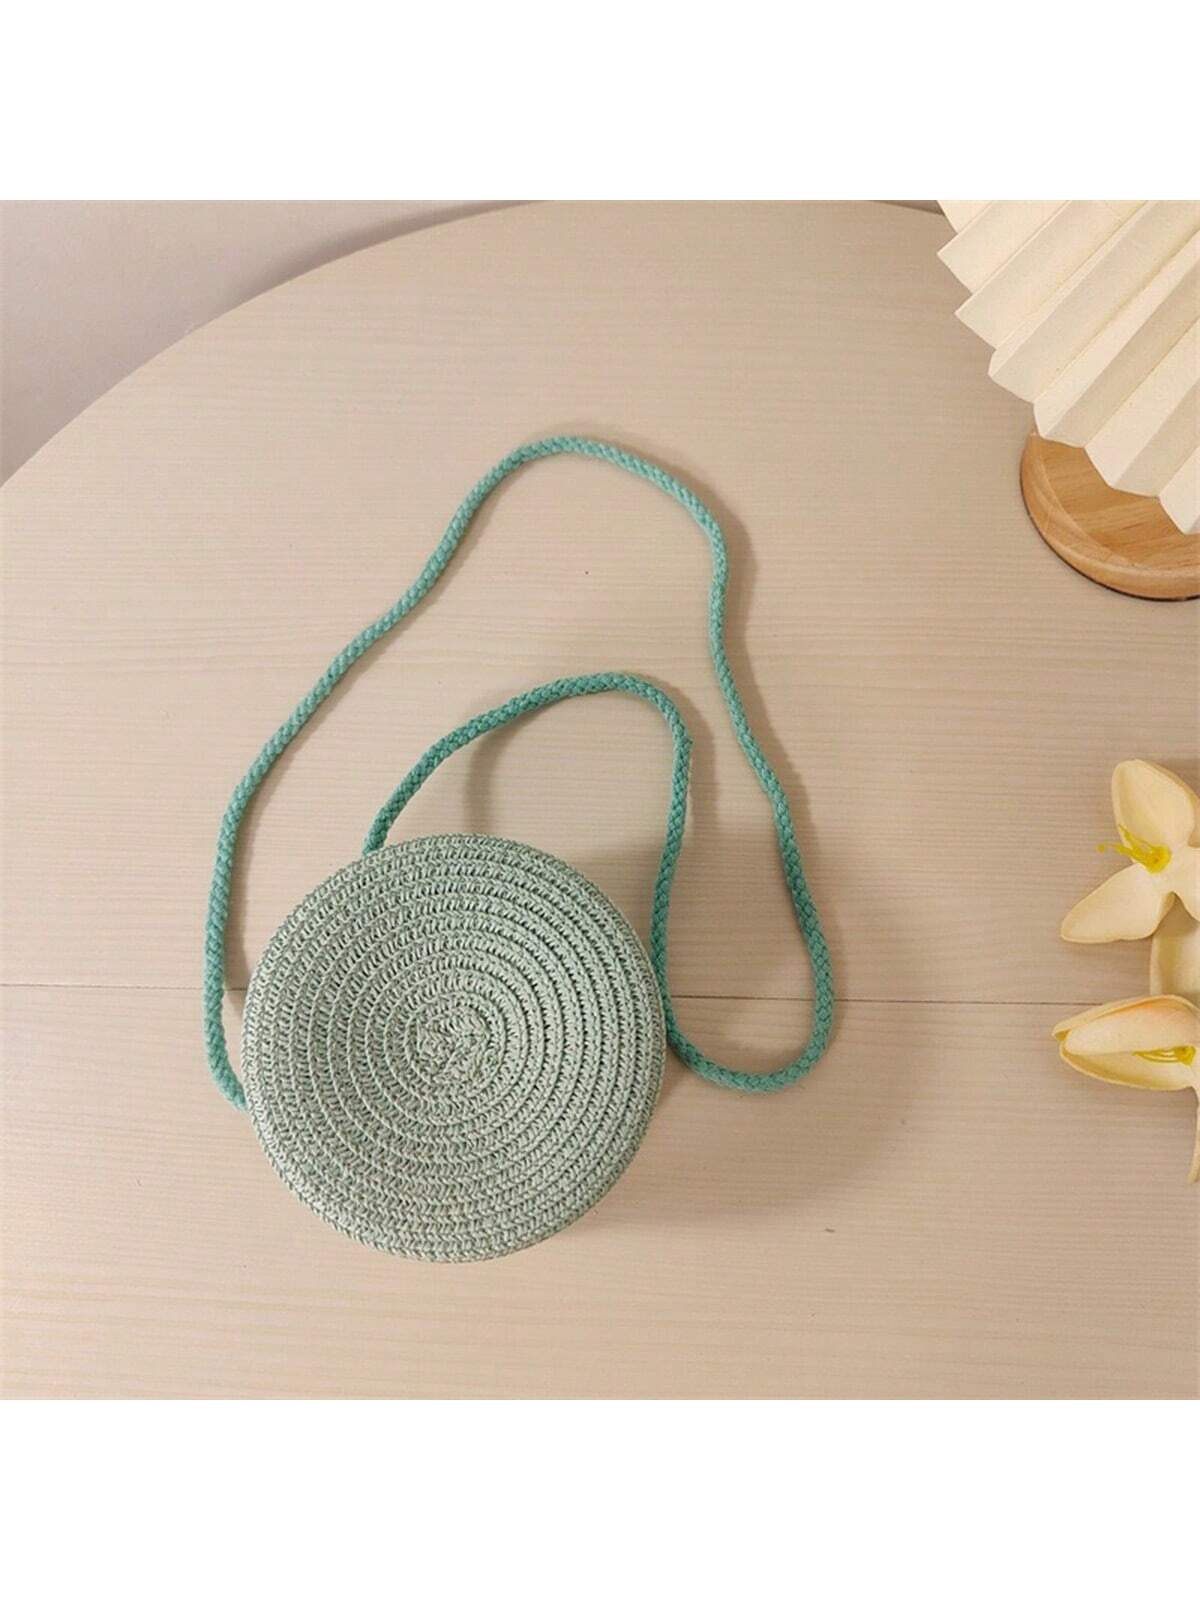 цена Мини-минималистичная соломенная сумка Простая круглая соломенная сумка, мятно-зеленый